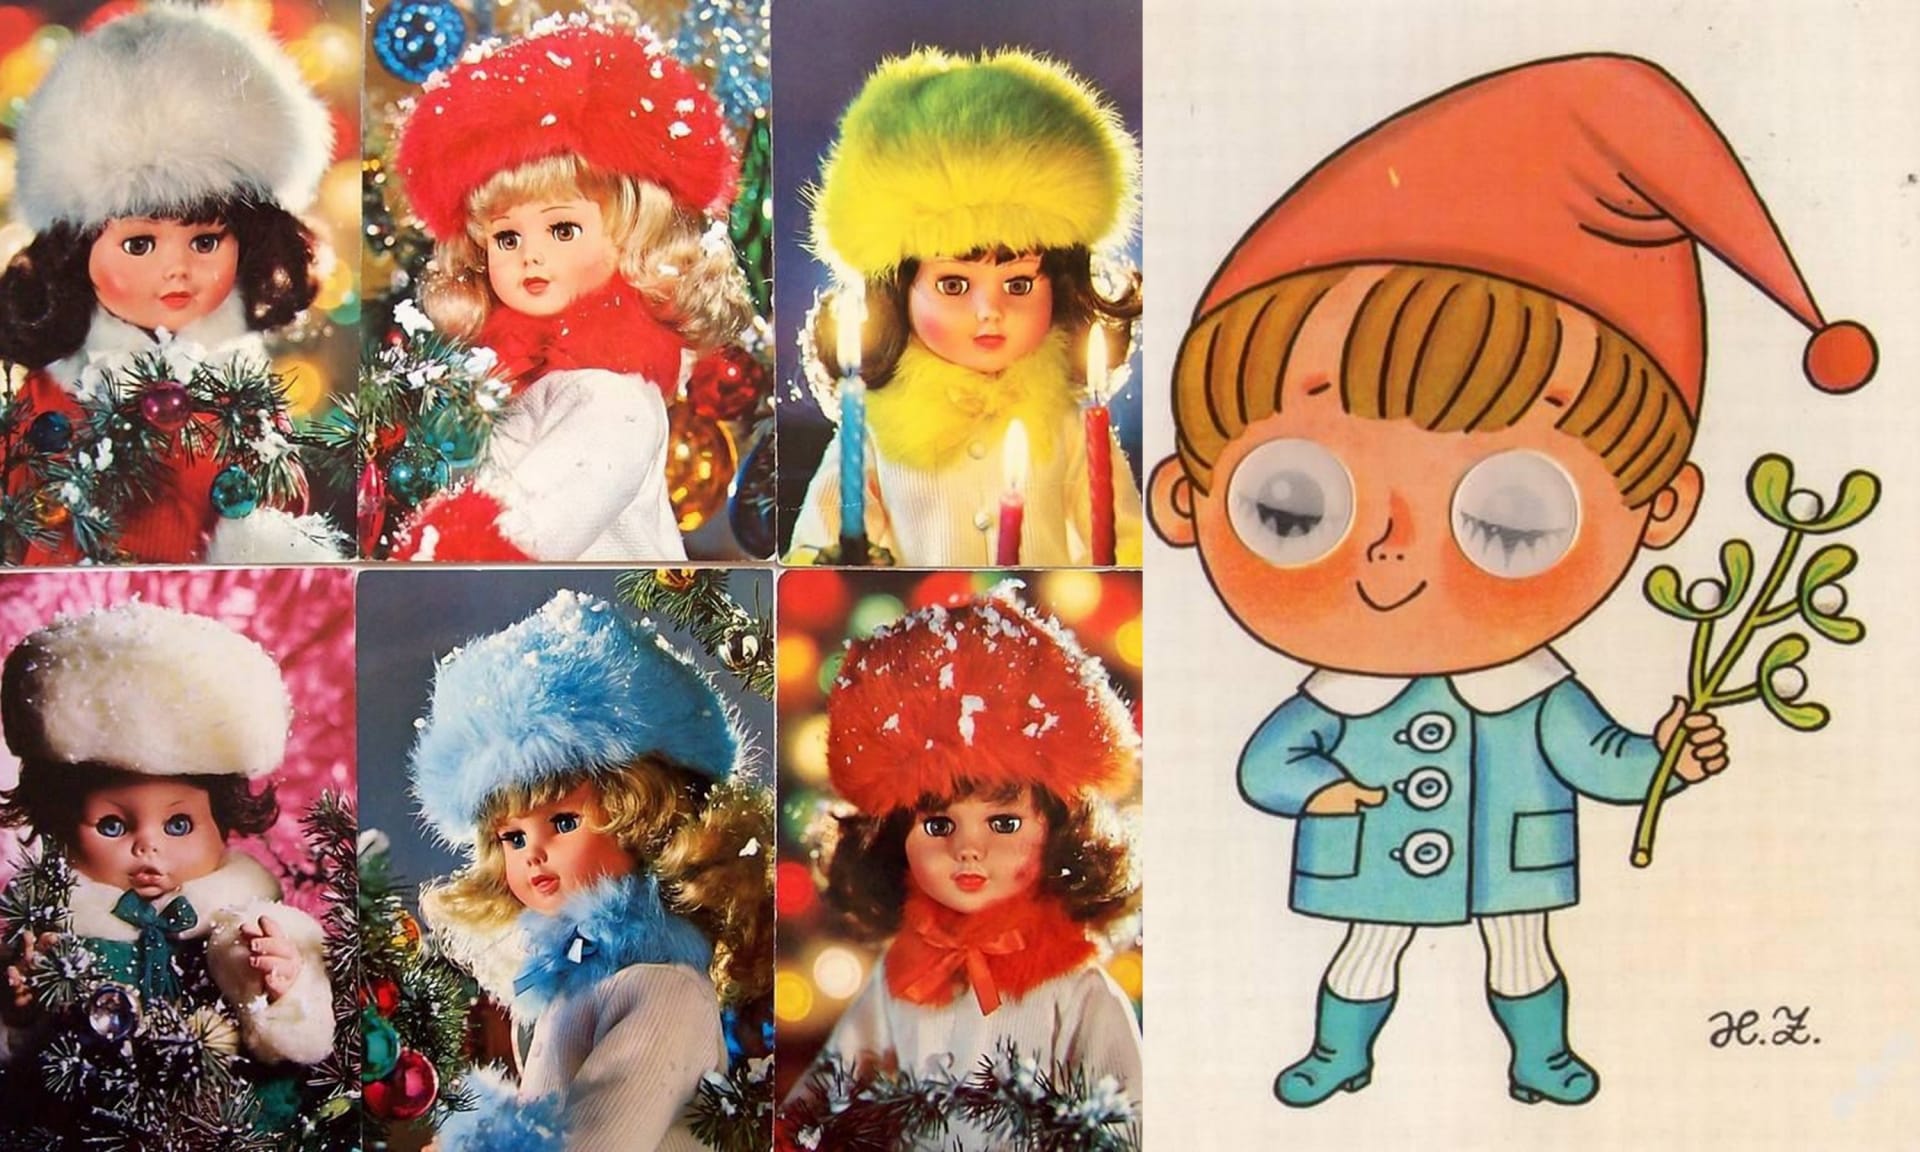 Pamatujete na mrkací panenky na vánočních pohledech?